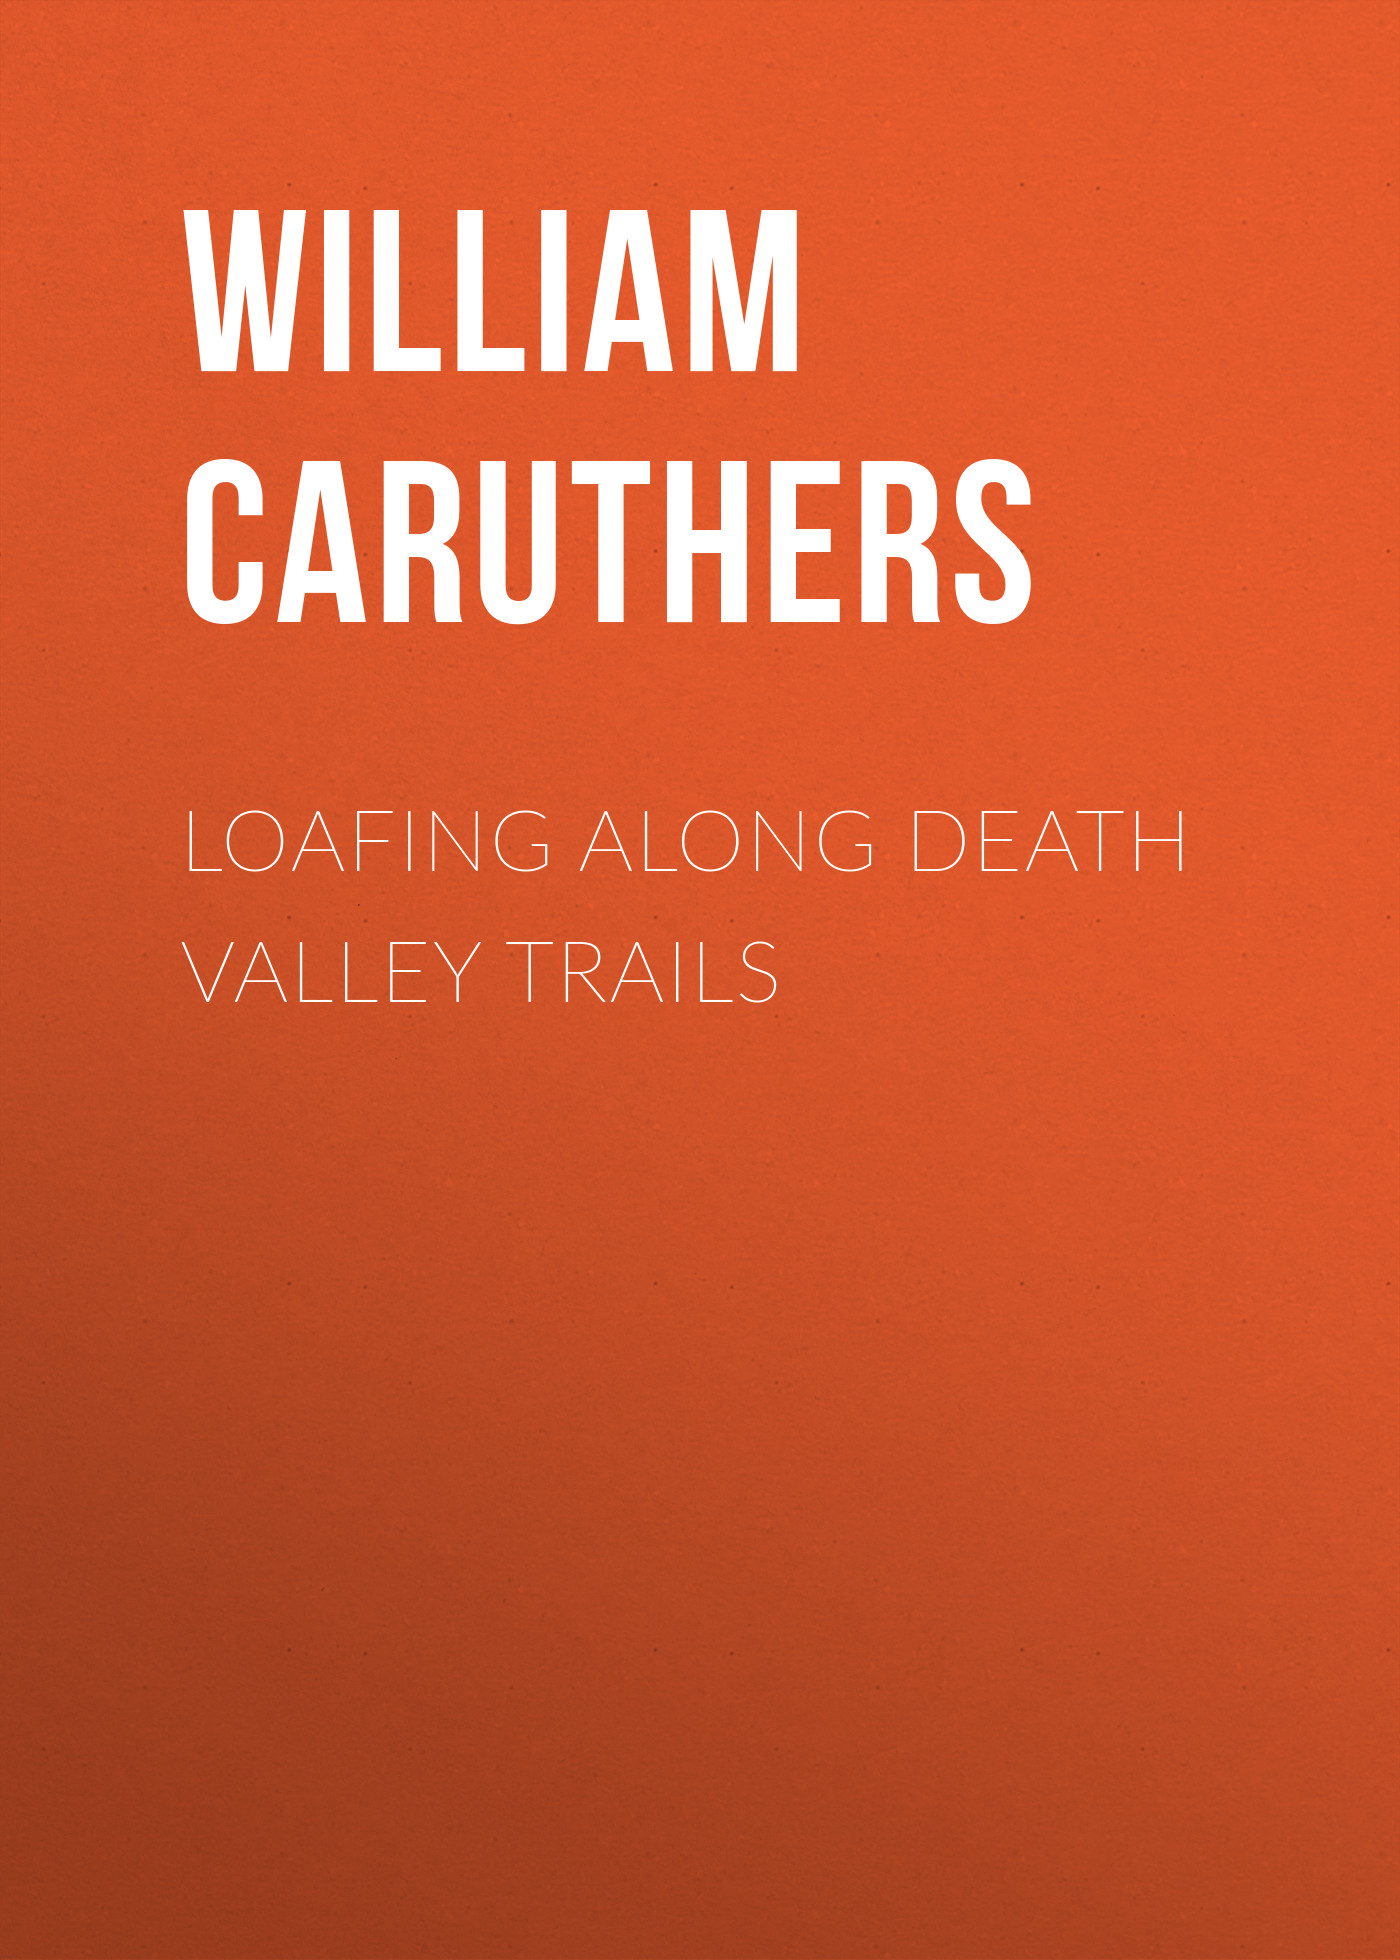 Книга Loafing Along Death Valley Trails из серии , созданная William Caruthers, может относится к жанру Иностранные языки, Зарубежная классика. Стоимость электронной книги Loafing Along Death Valley Trails с идентификатором 23162867 составляет 5.99 руб.